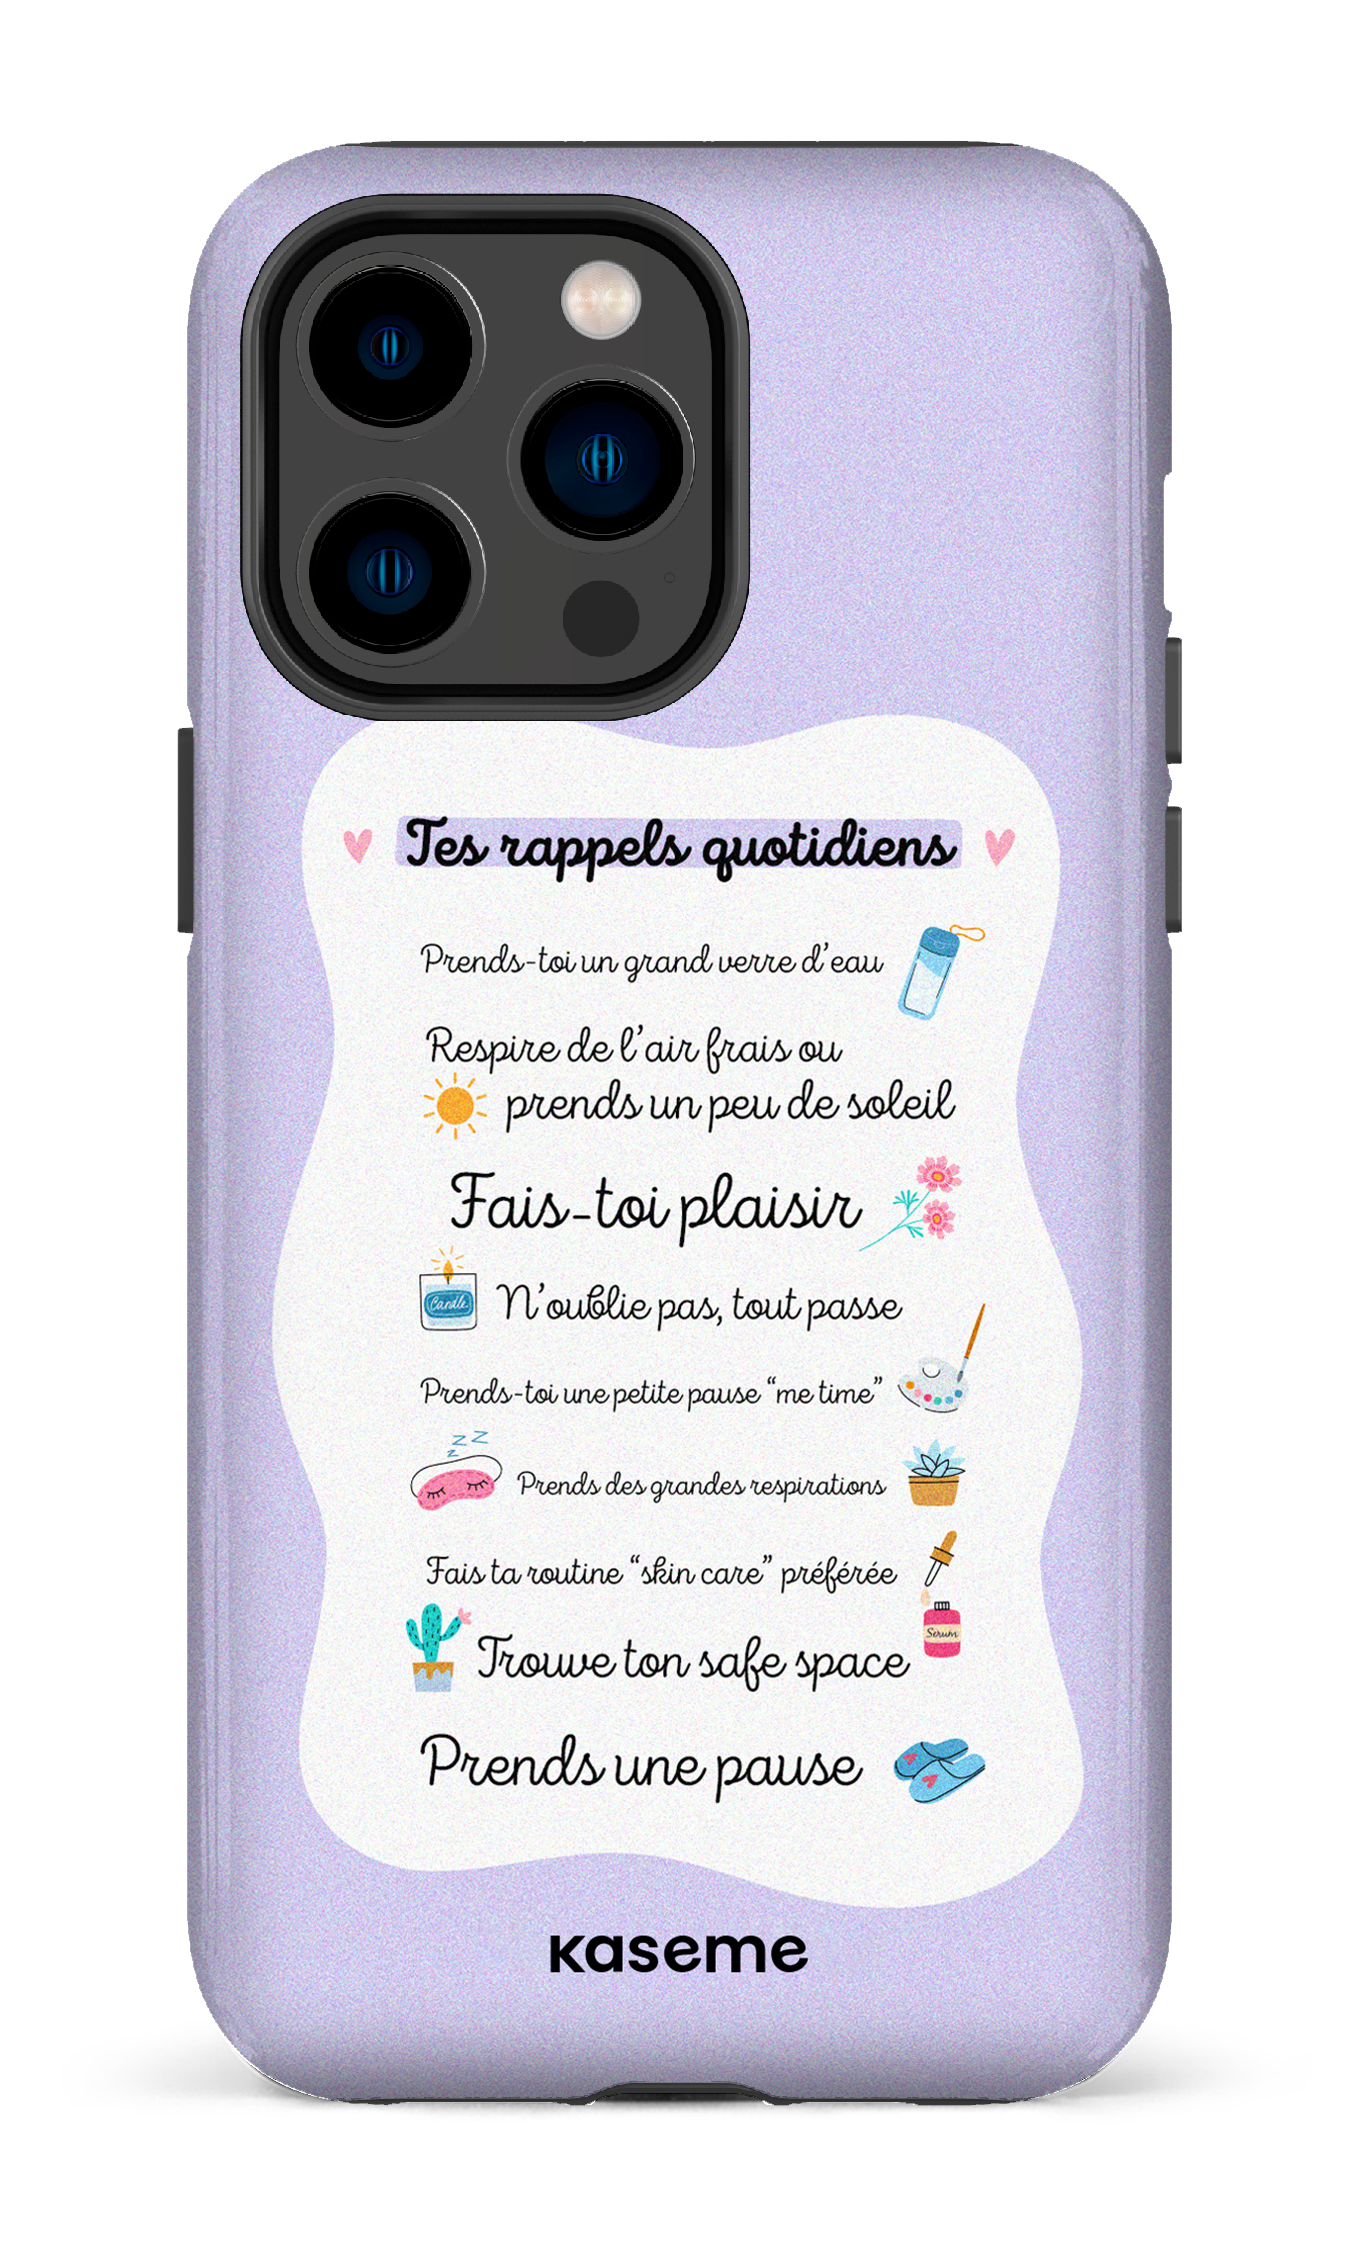 Tes rappels quotidiens purple - iPhone 14 Pro Max